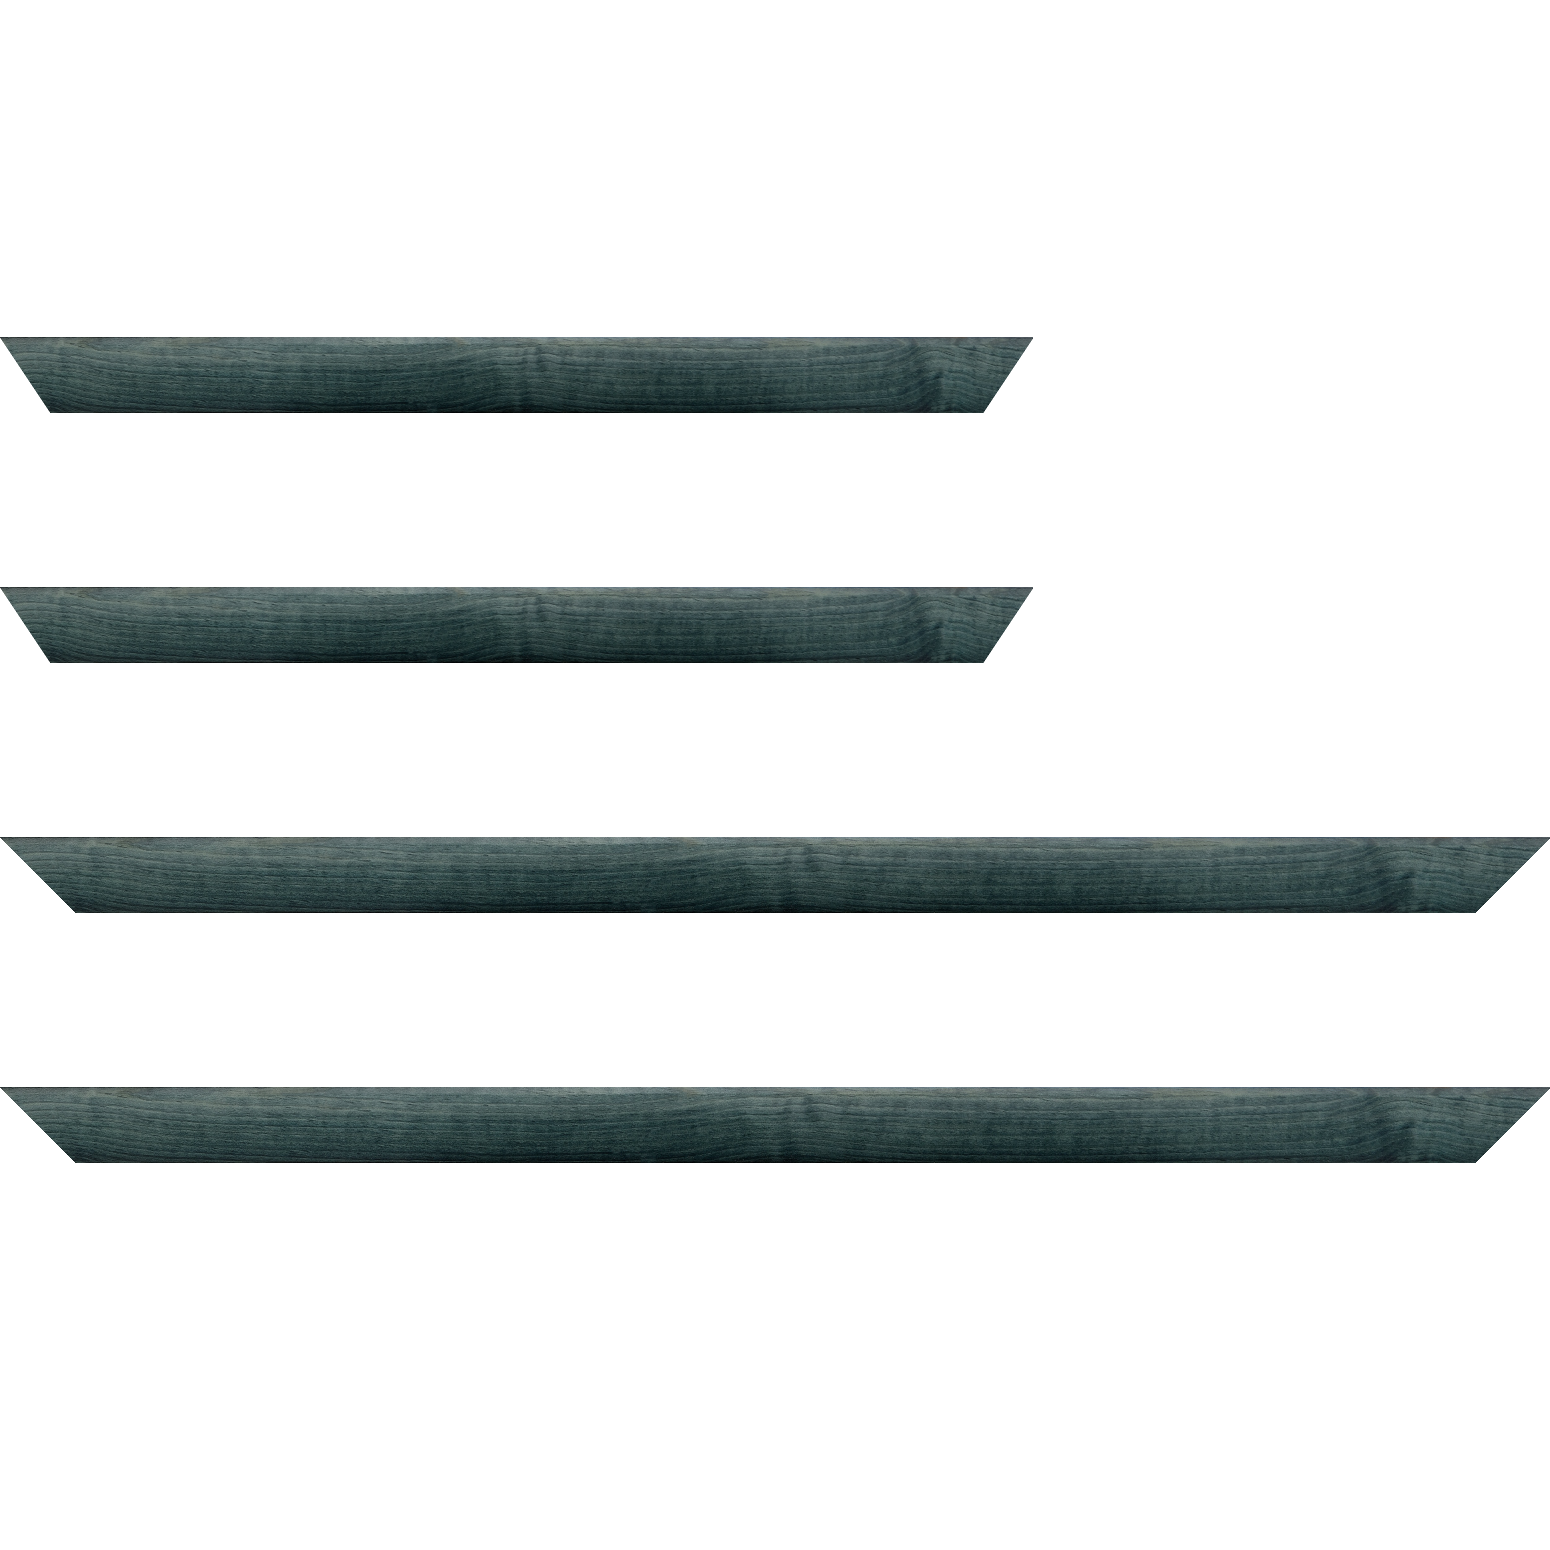 Baguette bois profil arrondi en pente plongeant largeur 2.4cm couleur bleu turquoise foncé finition vernis brillant,veine du bois  apparent (pin) , - 34x40